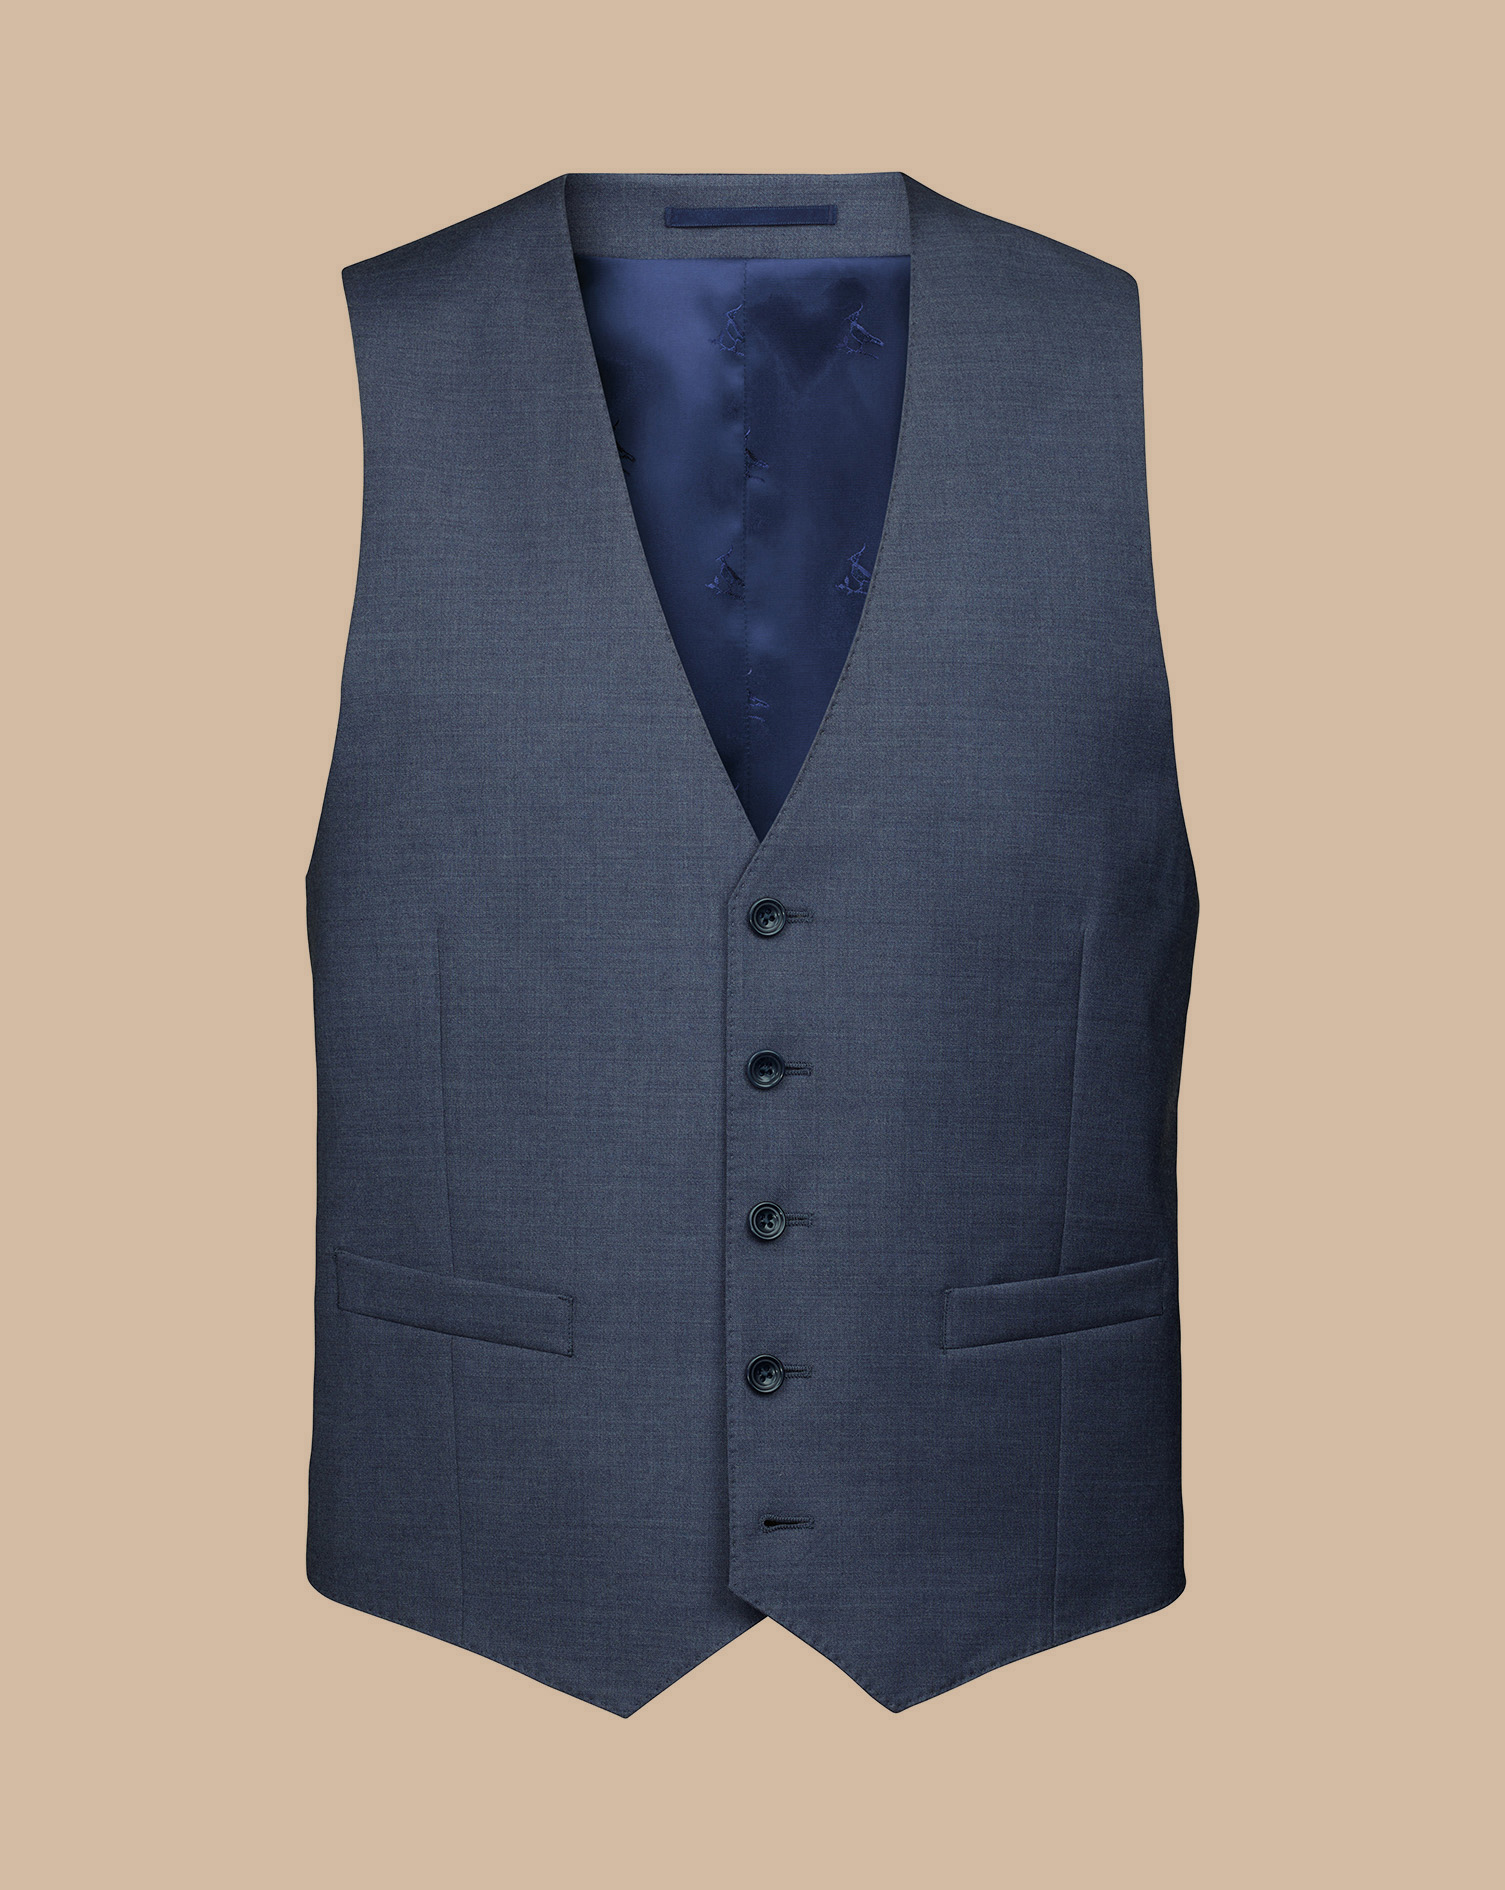 Men's Charles Tyrwhitt Italian Suit Waistcoat - Heather Blue Size w44 Wool
